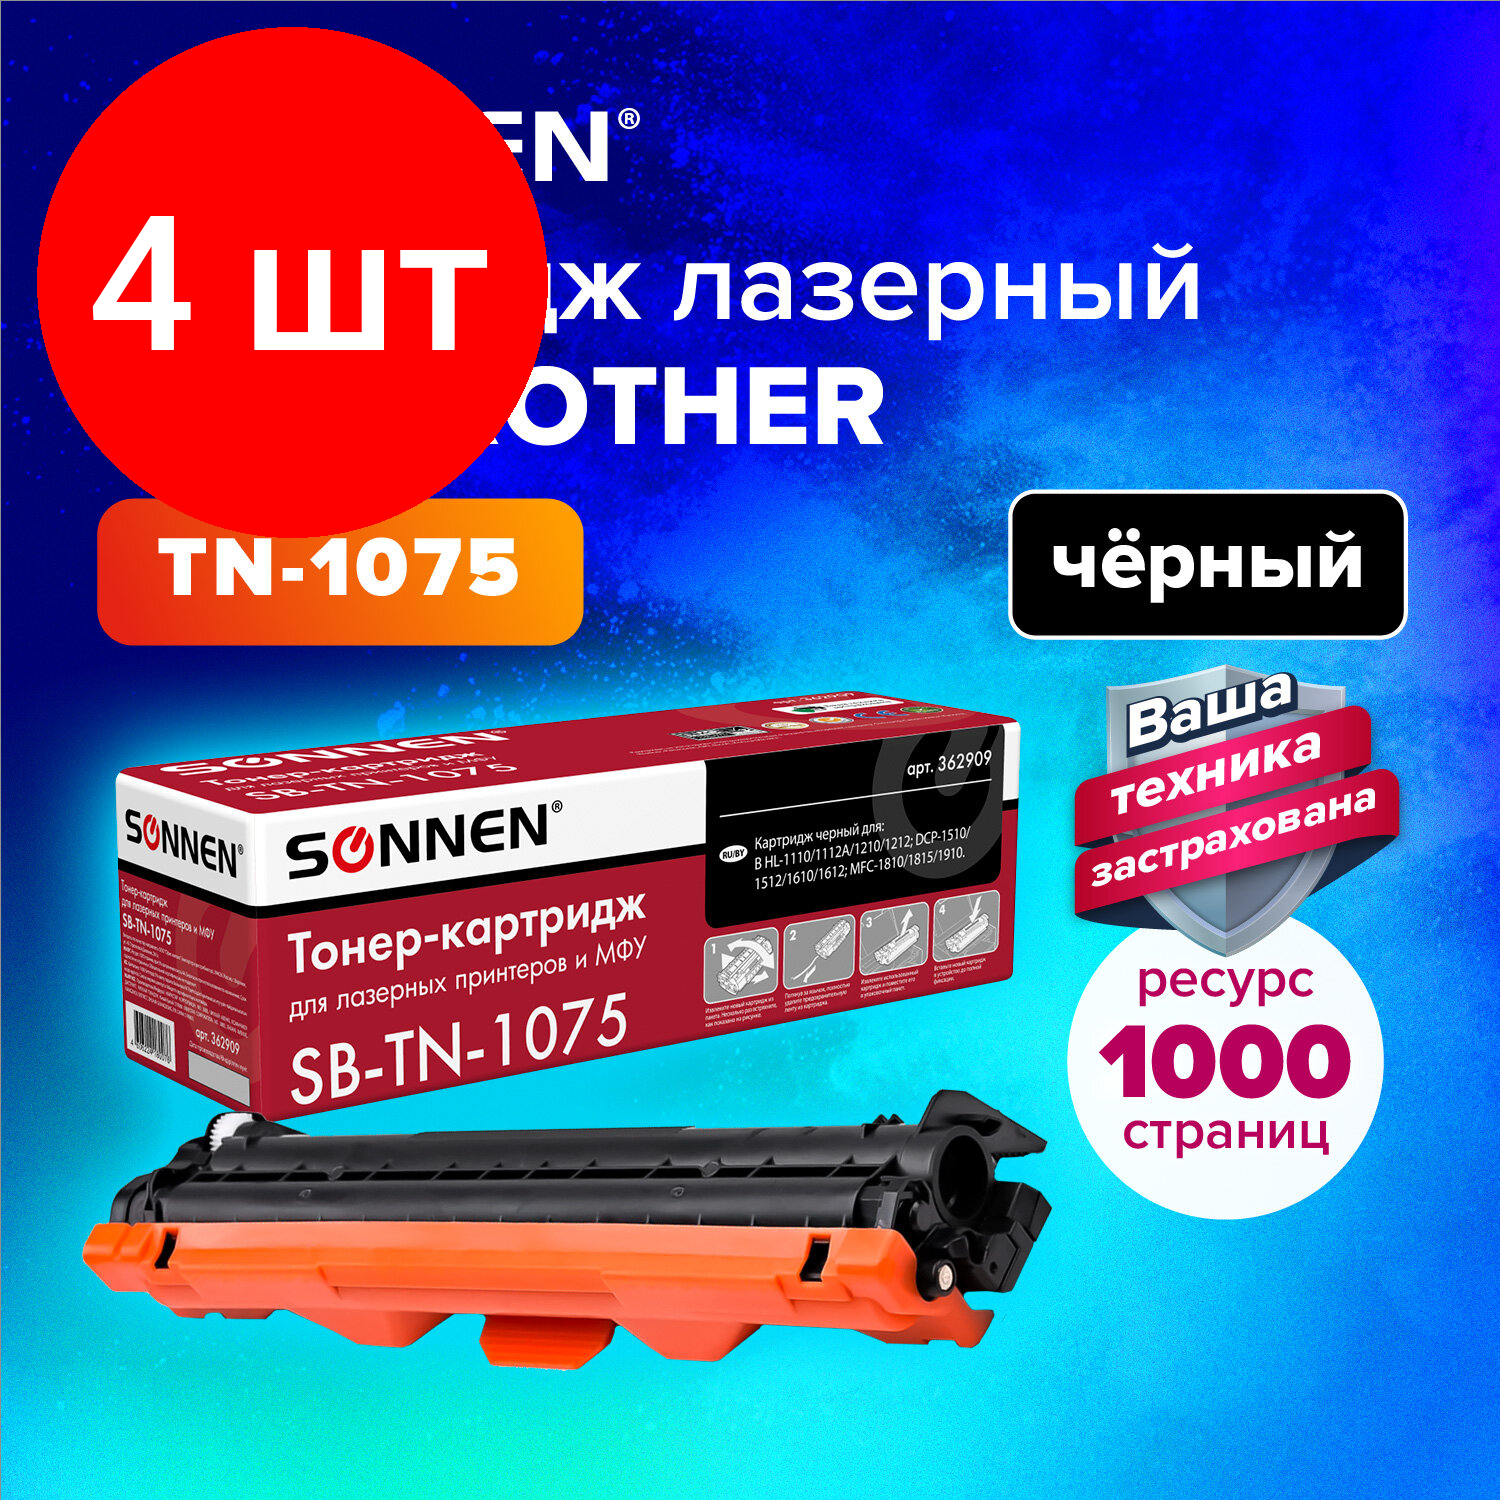 Комплект 4 шт, Картридж лазерный SONNEN (SB-TN1075) для BROTHER HL-1110R/1112R/DCP-1512/MFC-1815, высшее качество, ресурс 1000 стр., 362909